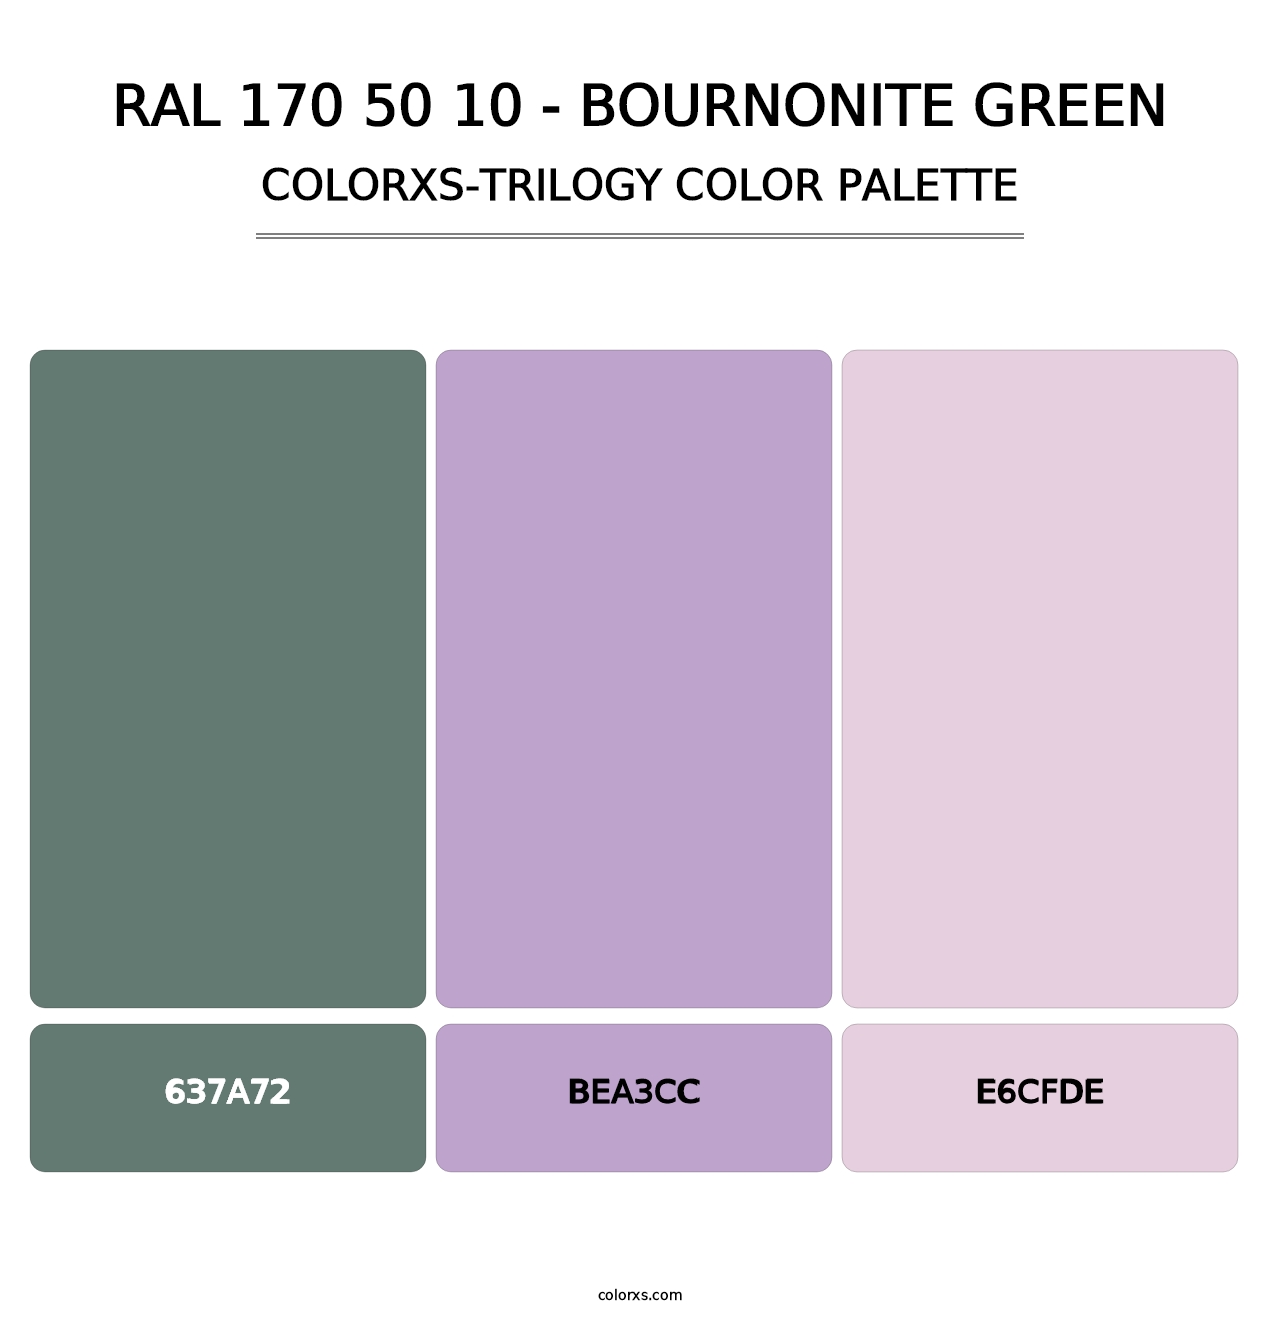 RAL 170 50 10 - Bournonite Green - Colorxs Trilogy Palette